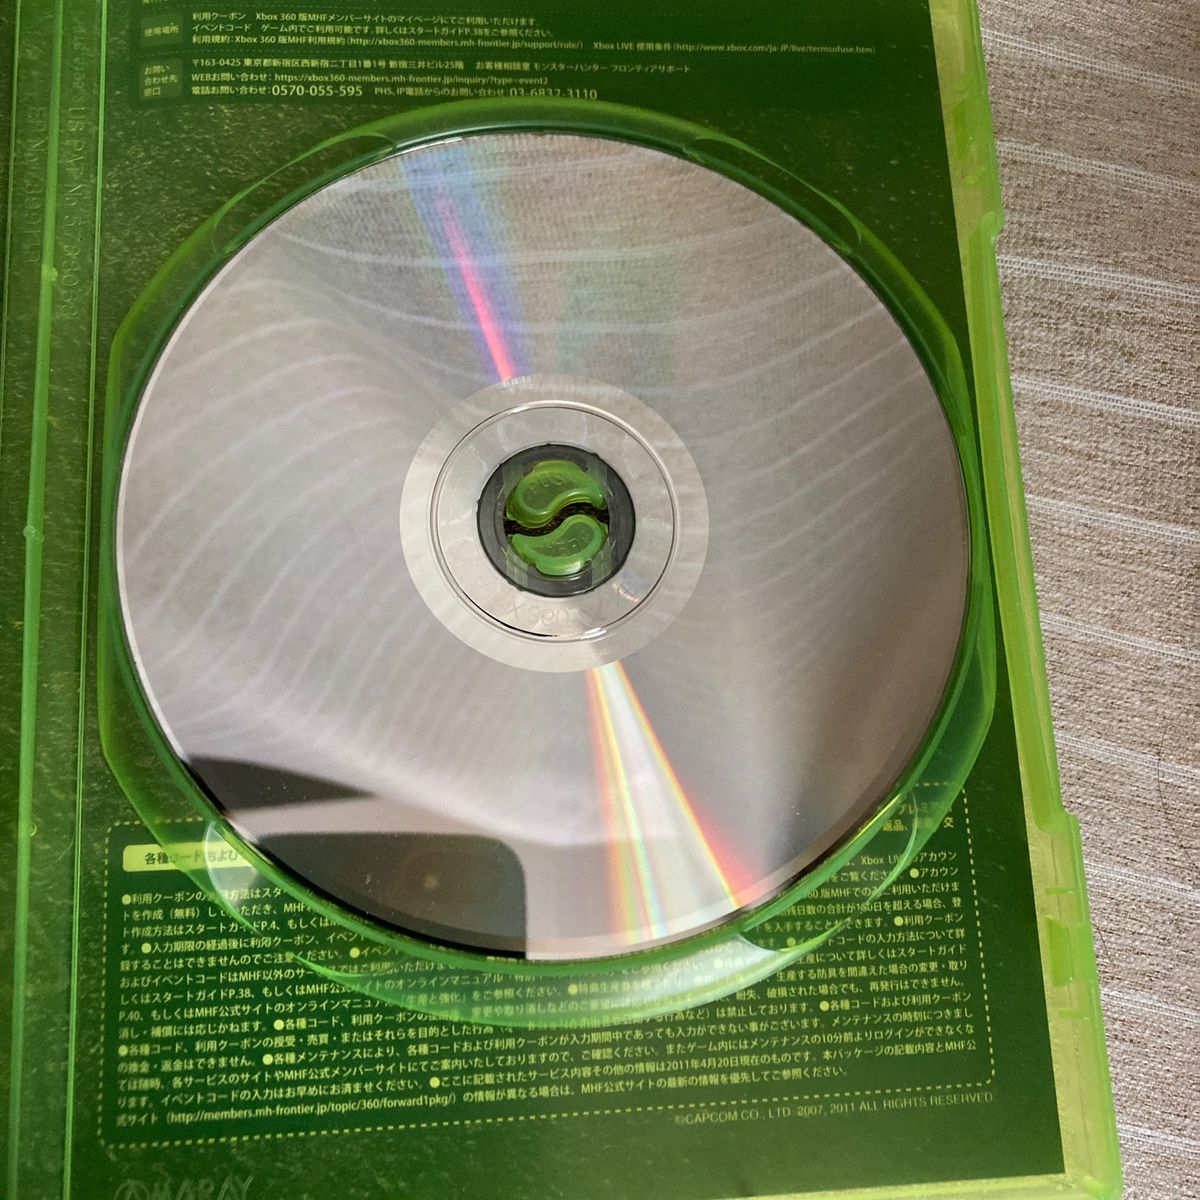 Xbox360 モンスターハンター フロンティア オンライン フォワード.1 プレミアムパッケージ (通常版) [カプコン]